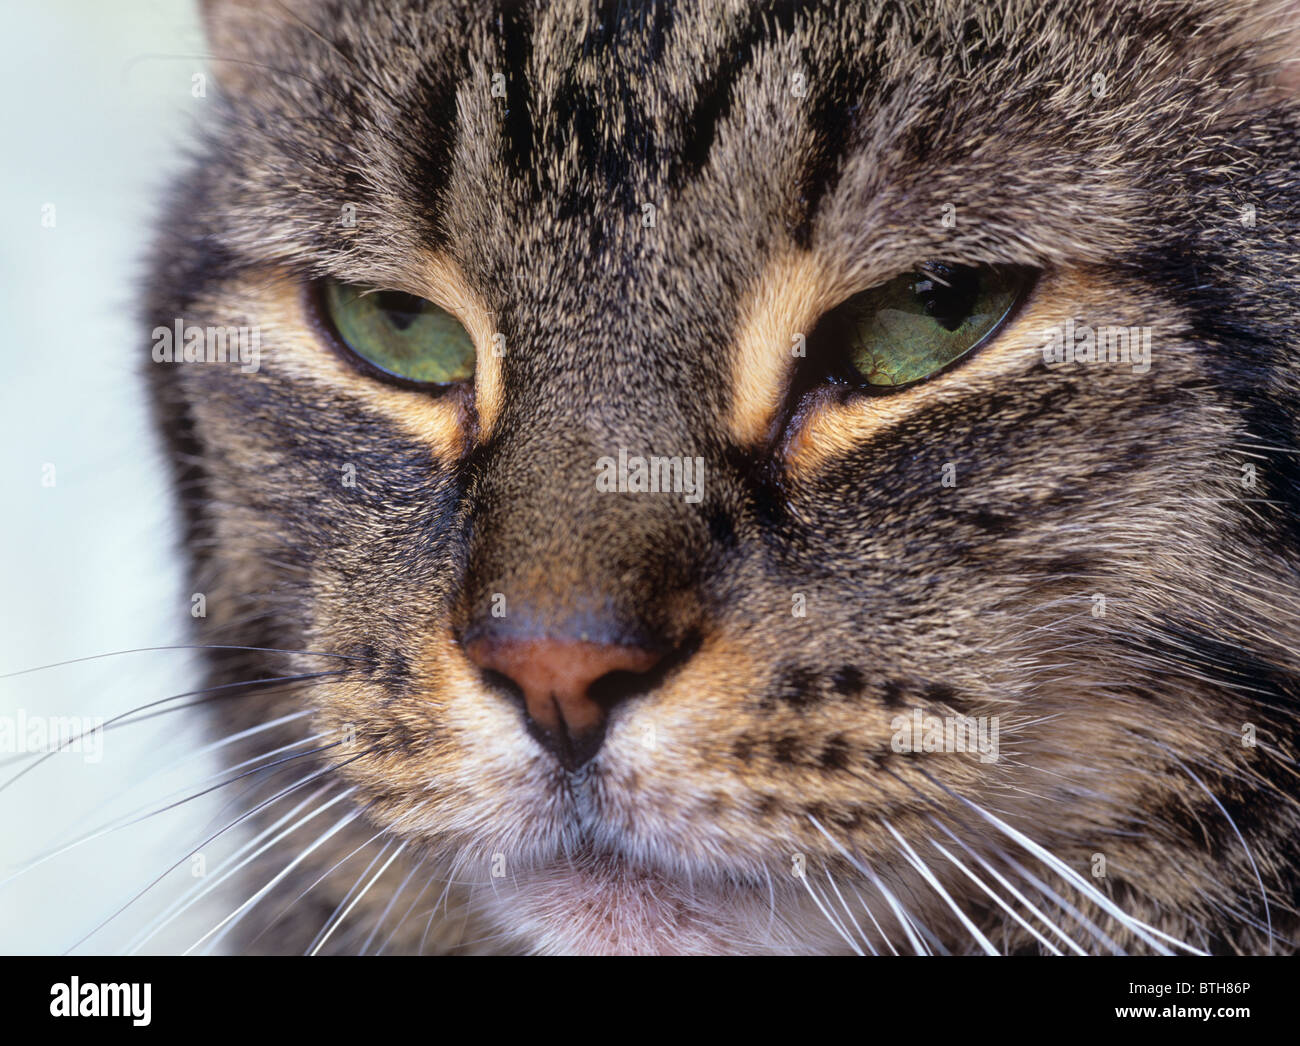 Close Up Tiger Cat's Face Stock Photo - Alamy